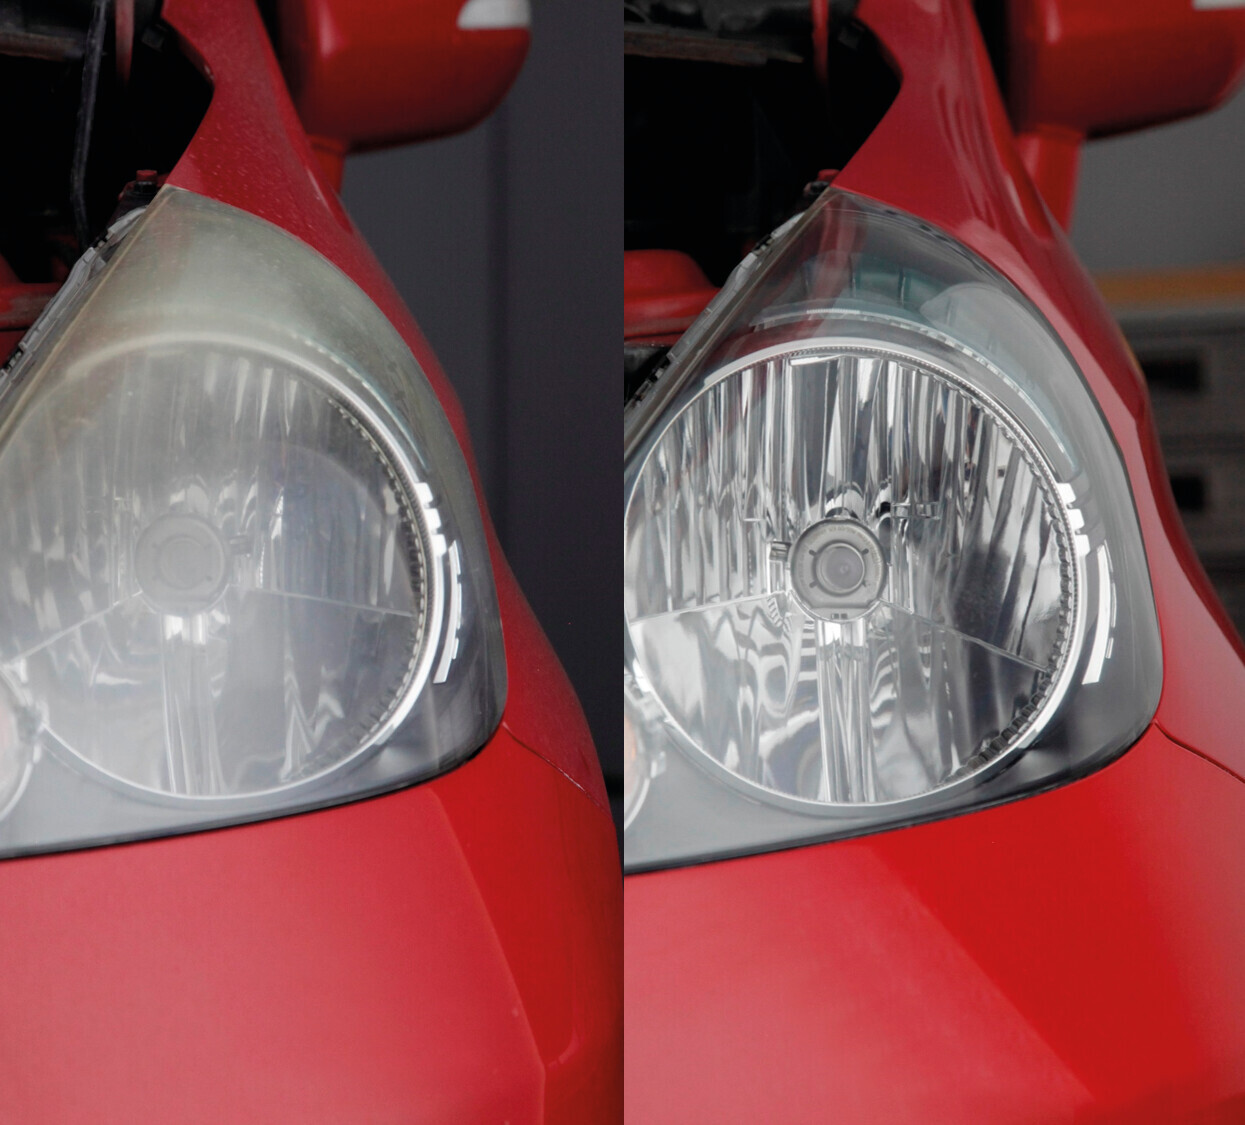 Quixx headlight restoration kit thumb